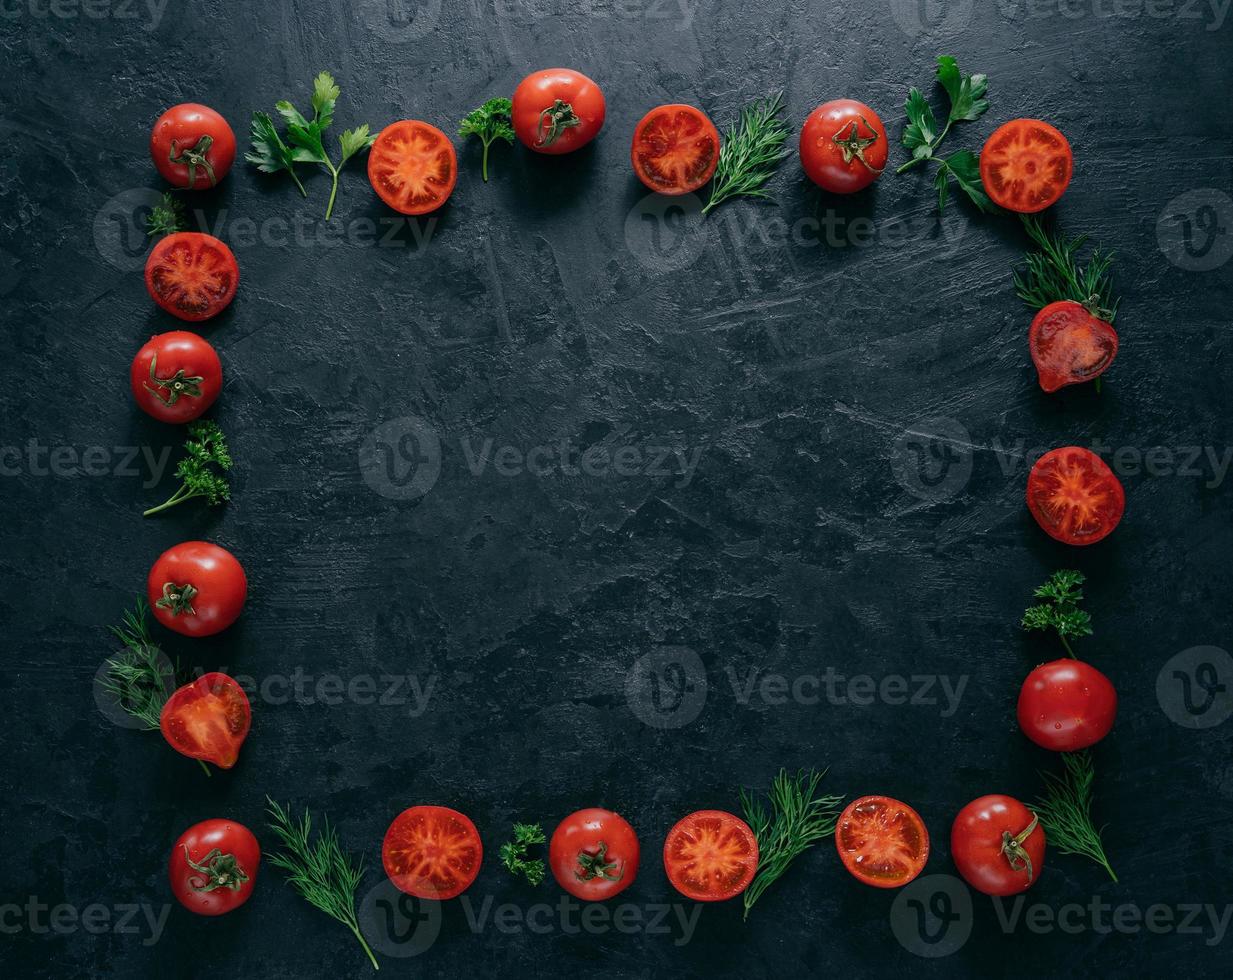 plat leggen van rode rijpe tomaten ligt in de vorm van een frame op een donkere achtergrond met groene peterselie en dille. gezond vegetarisch gerecht. horizontaal schot. kopieer ruimte voor tekst foto